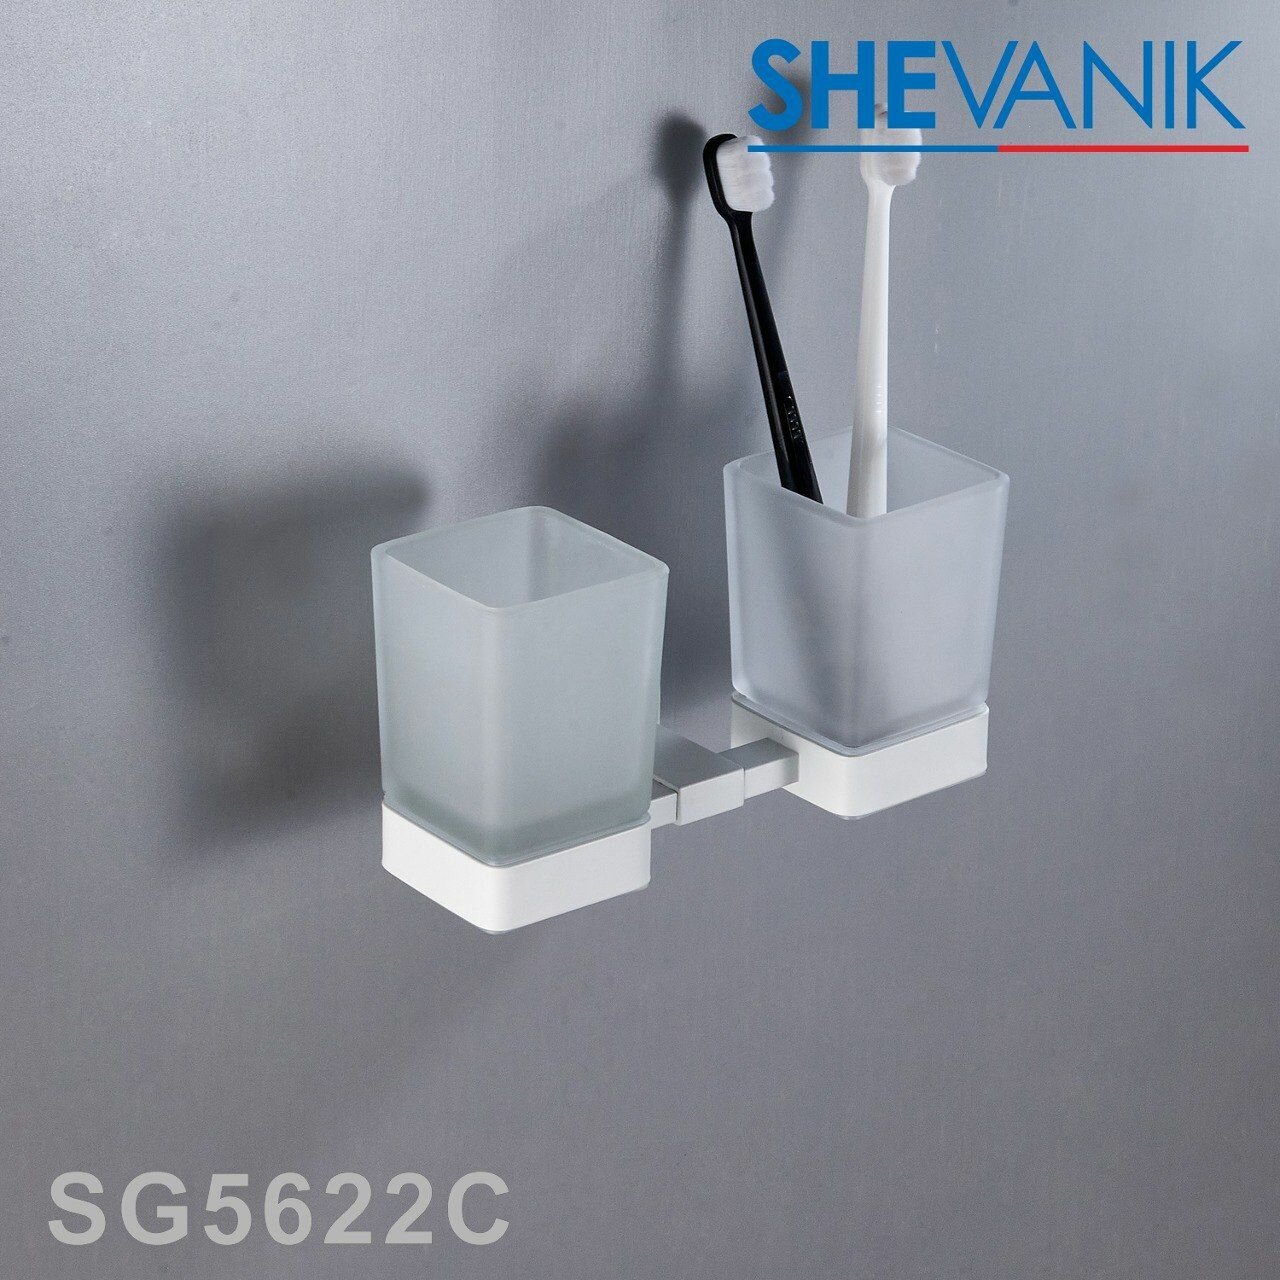 Двойной стакан для ванной Shevanik с держателем SG5622C белый